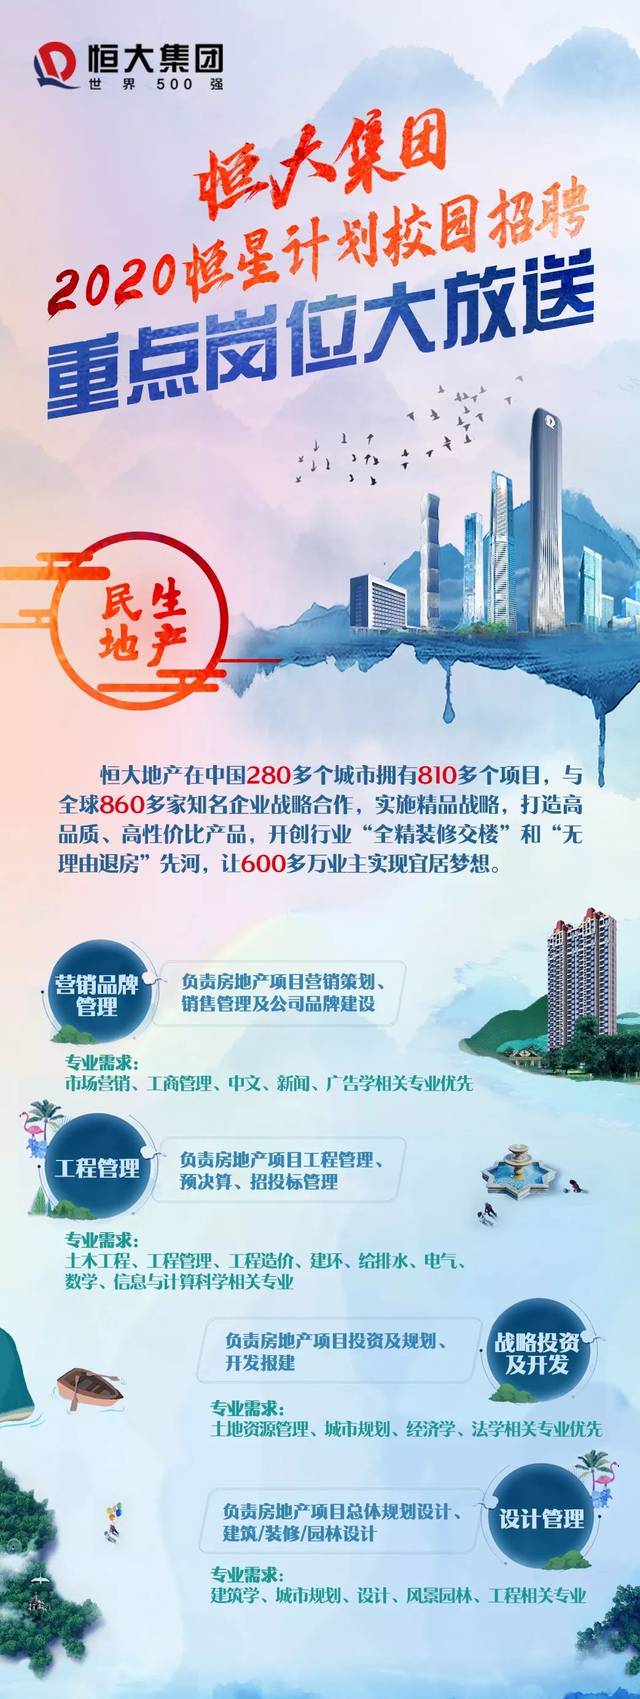 广州恒大新能源汽车招聘信息 广州恒大